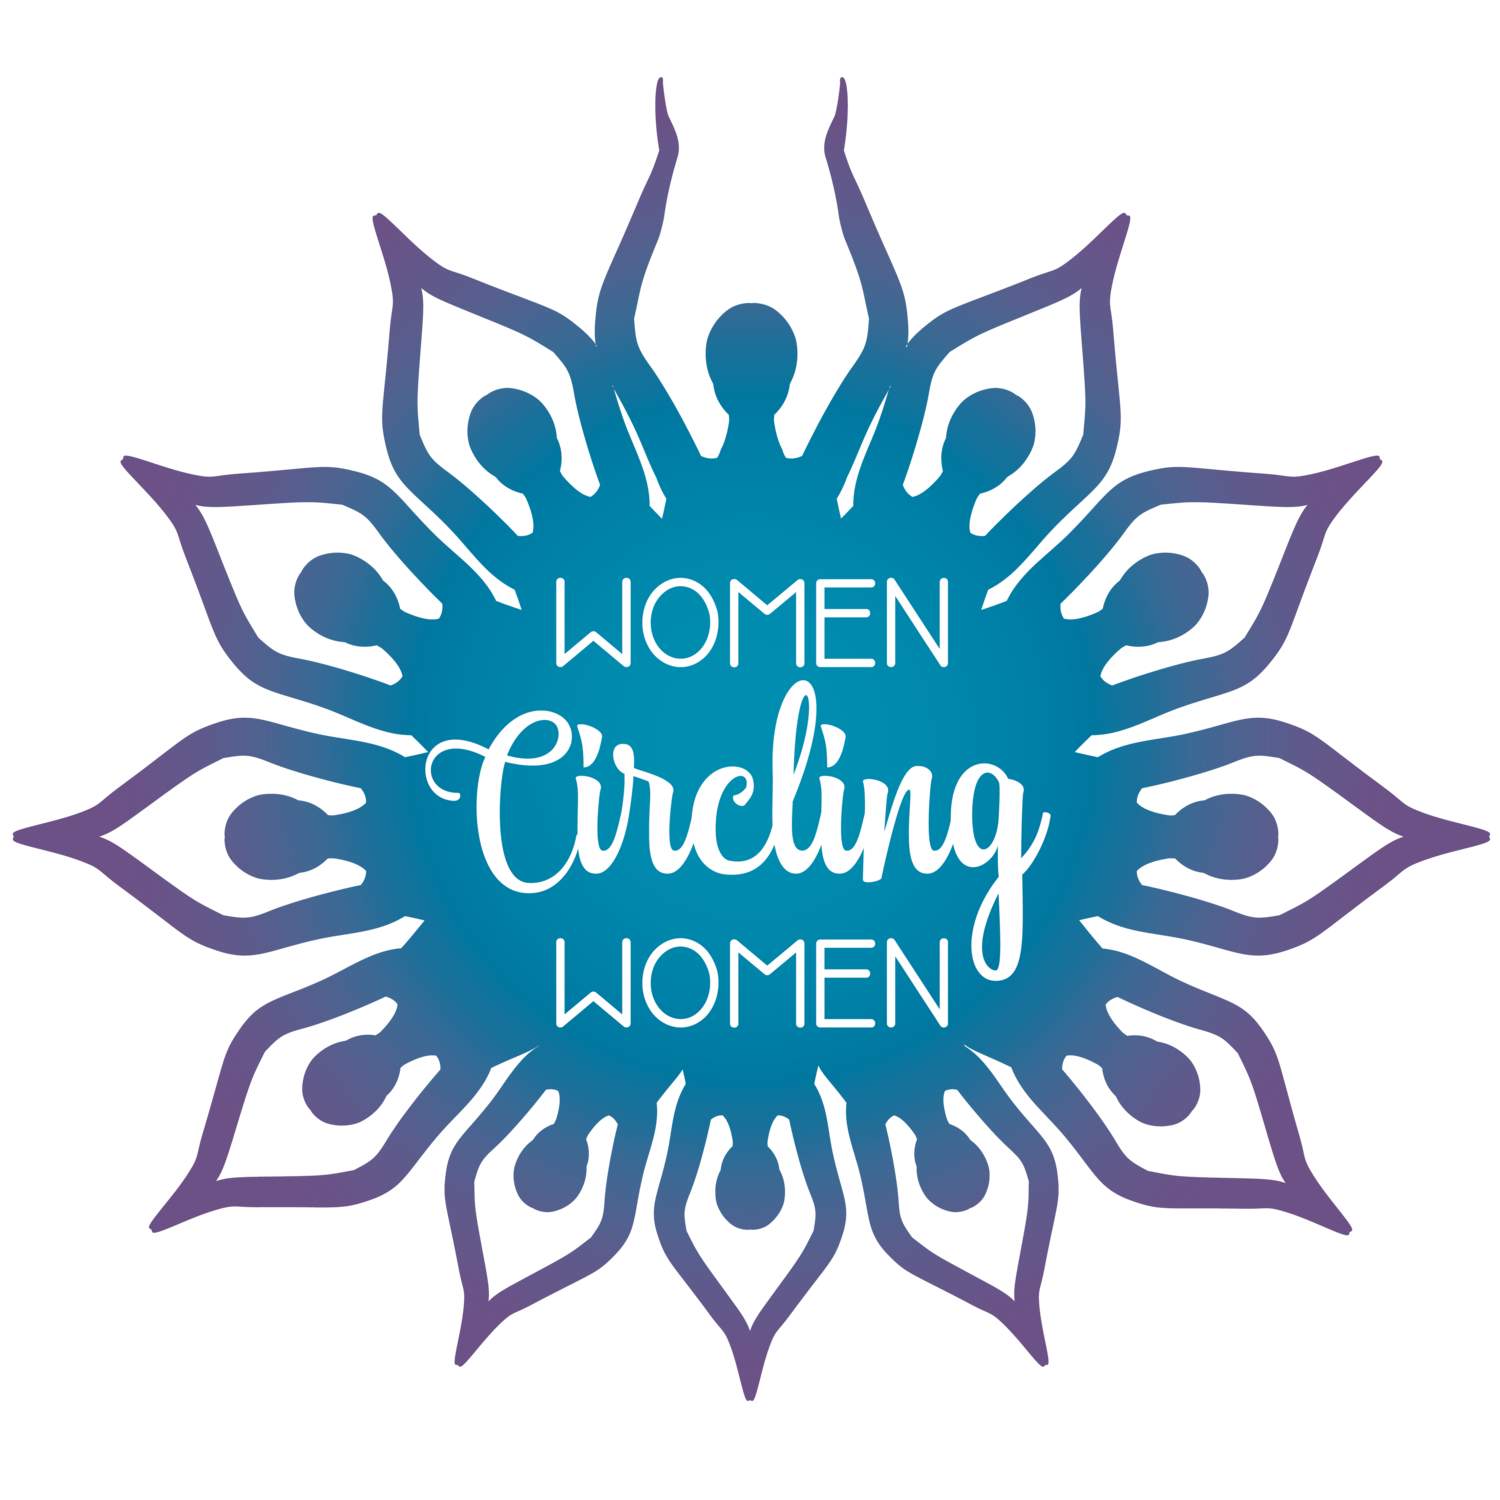 Women Circling Women